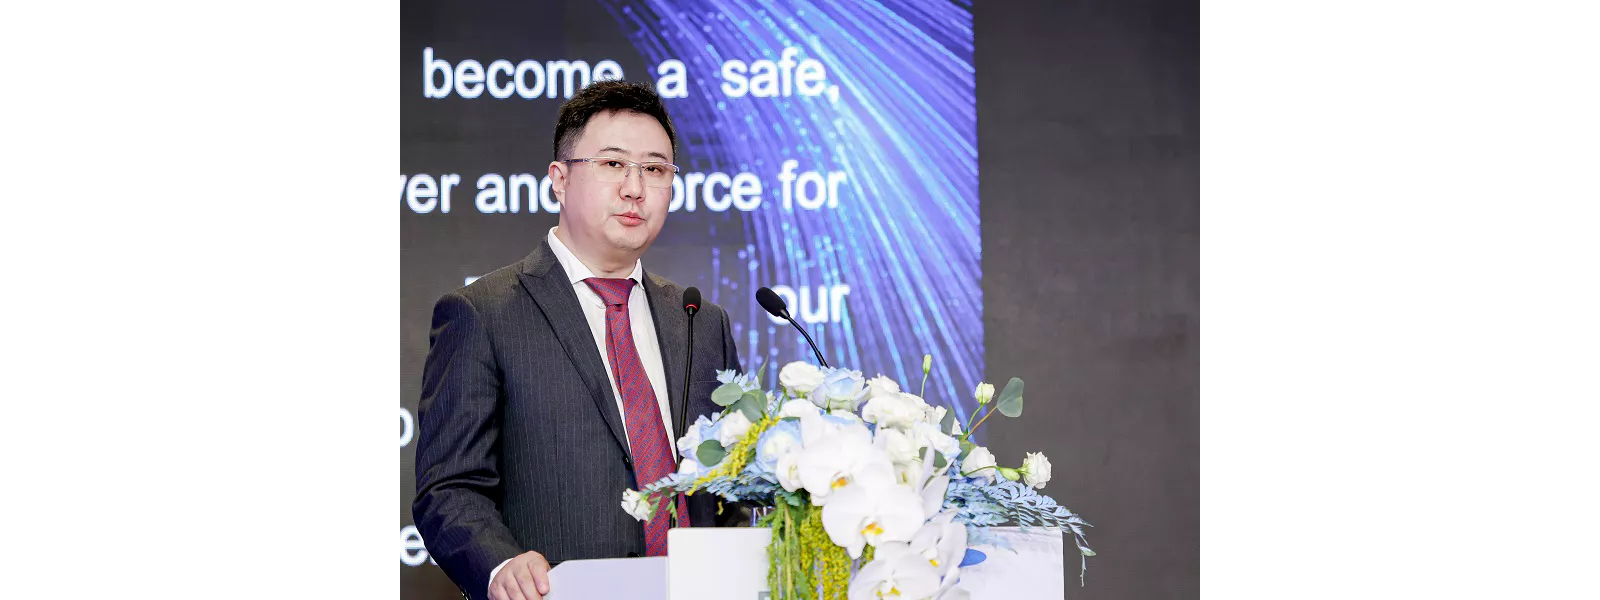 Richard Cheung hablando sobre el décimo aniversario de Plansee China